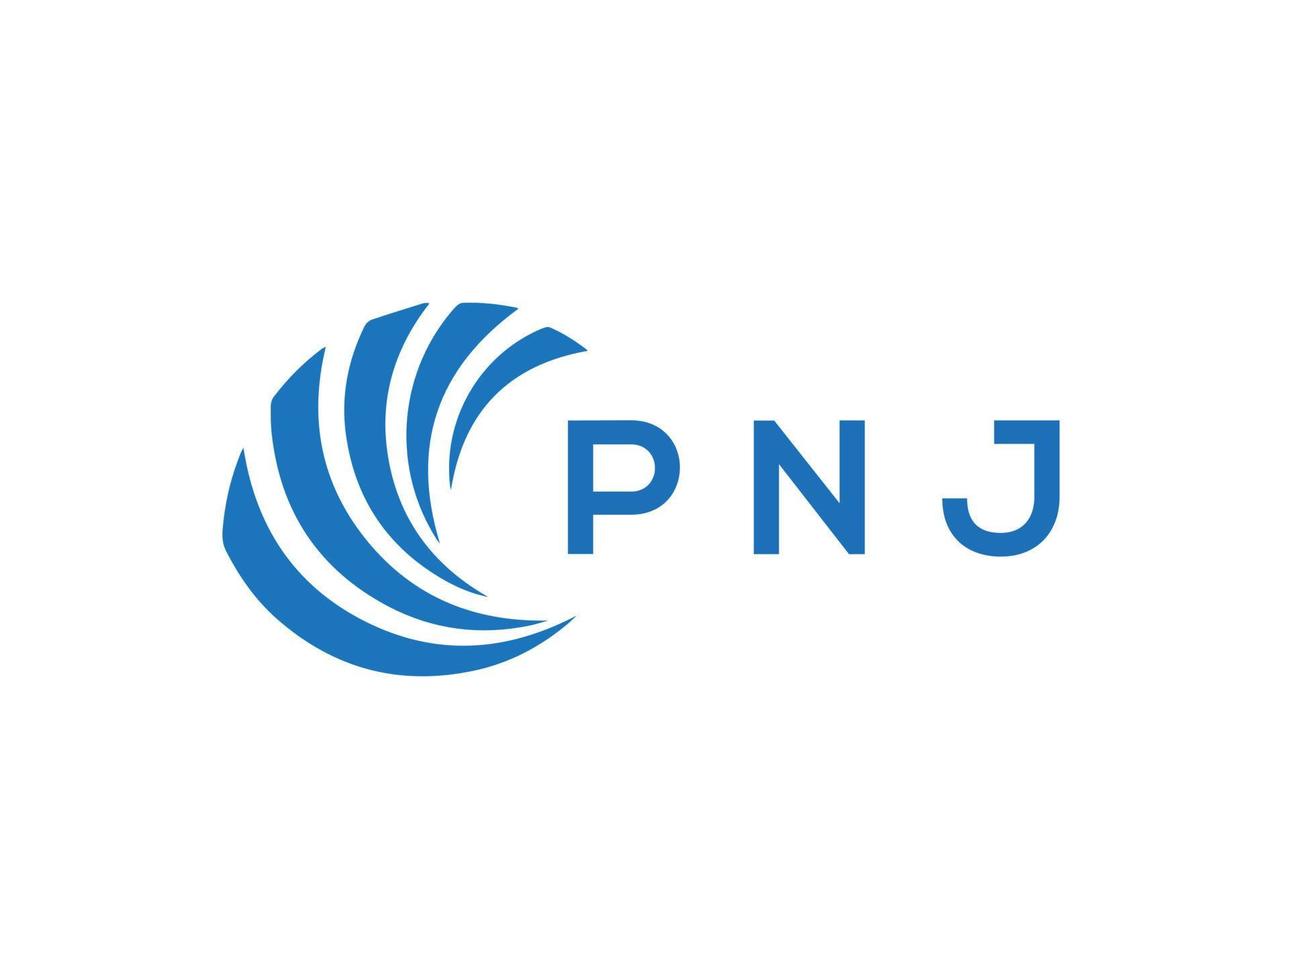 PNJ letter logo design on white background. PNJ creative circle letter logo concept. PNJ letter design. vector